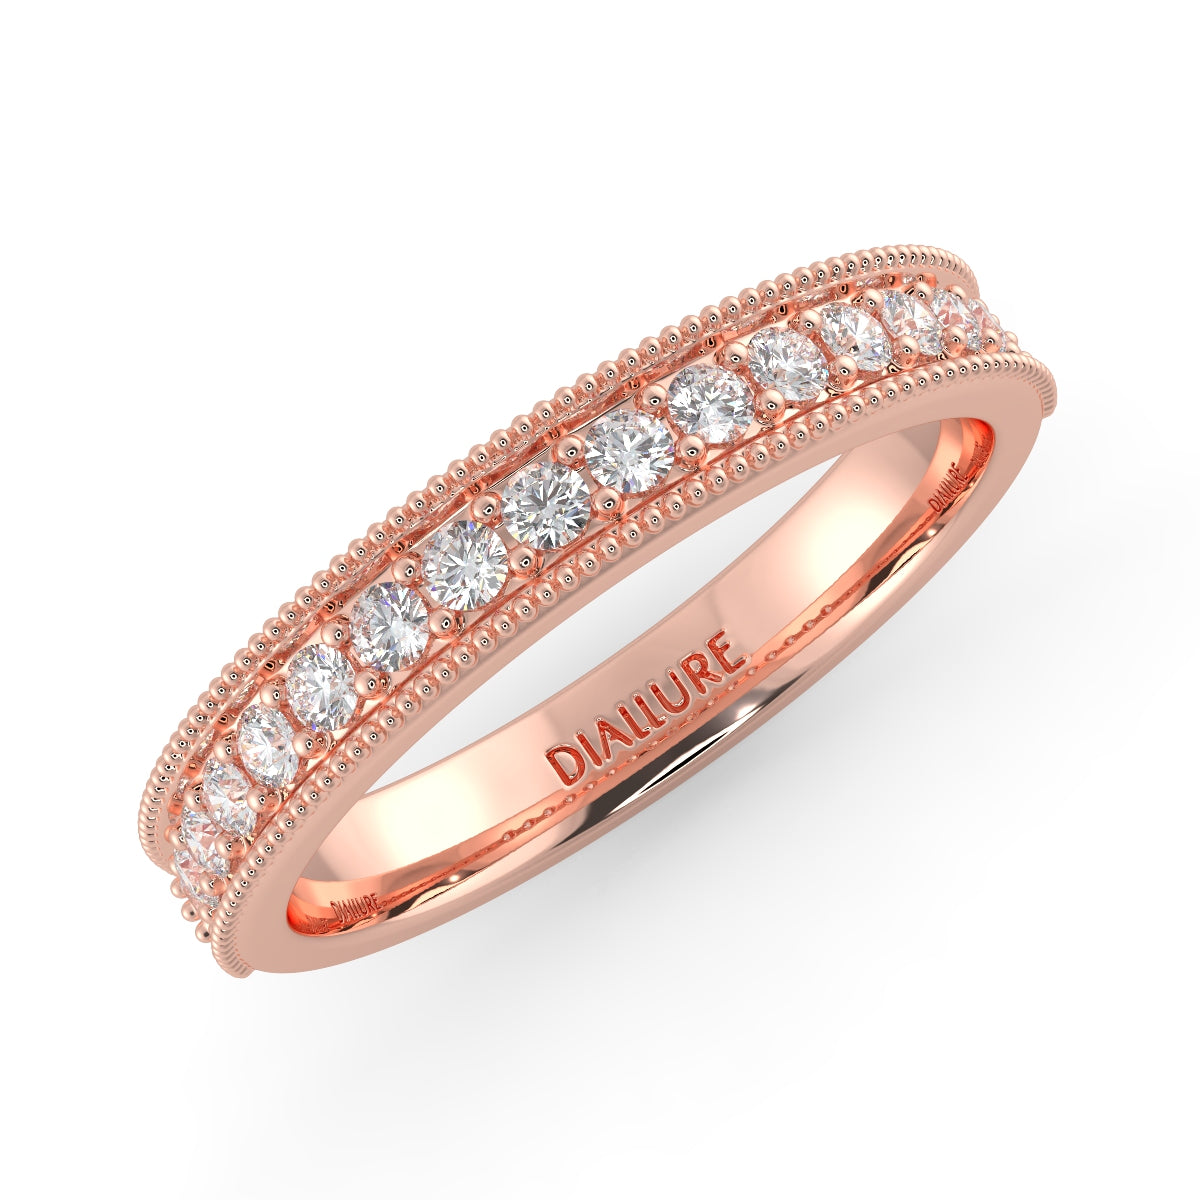 Natalie Milgrain Half Eternity Ring Round Brilliant Cut Diamond 0.24 carat 